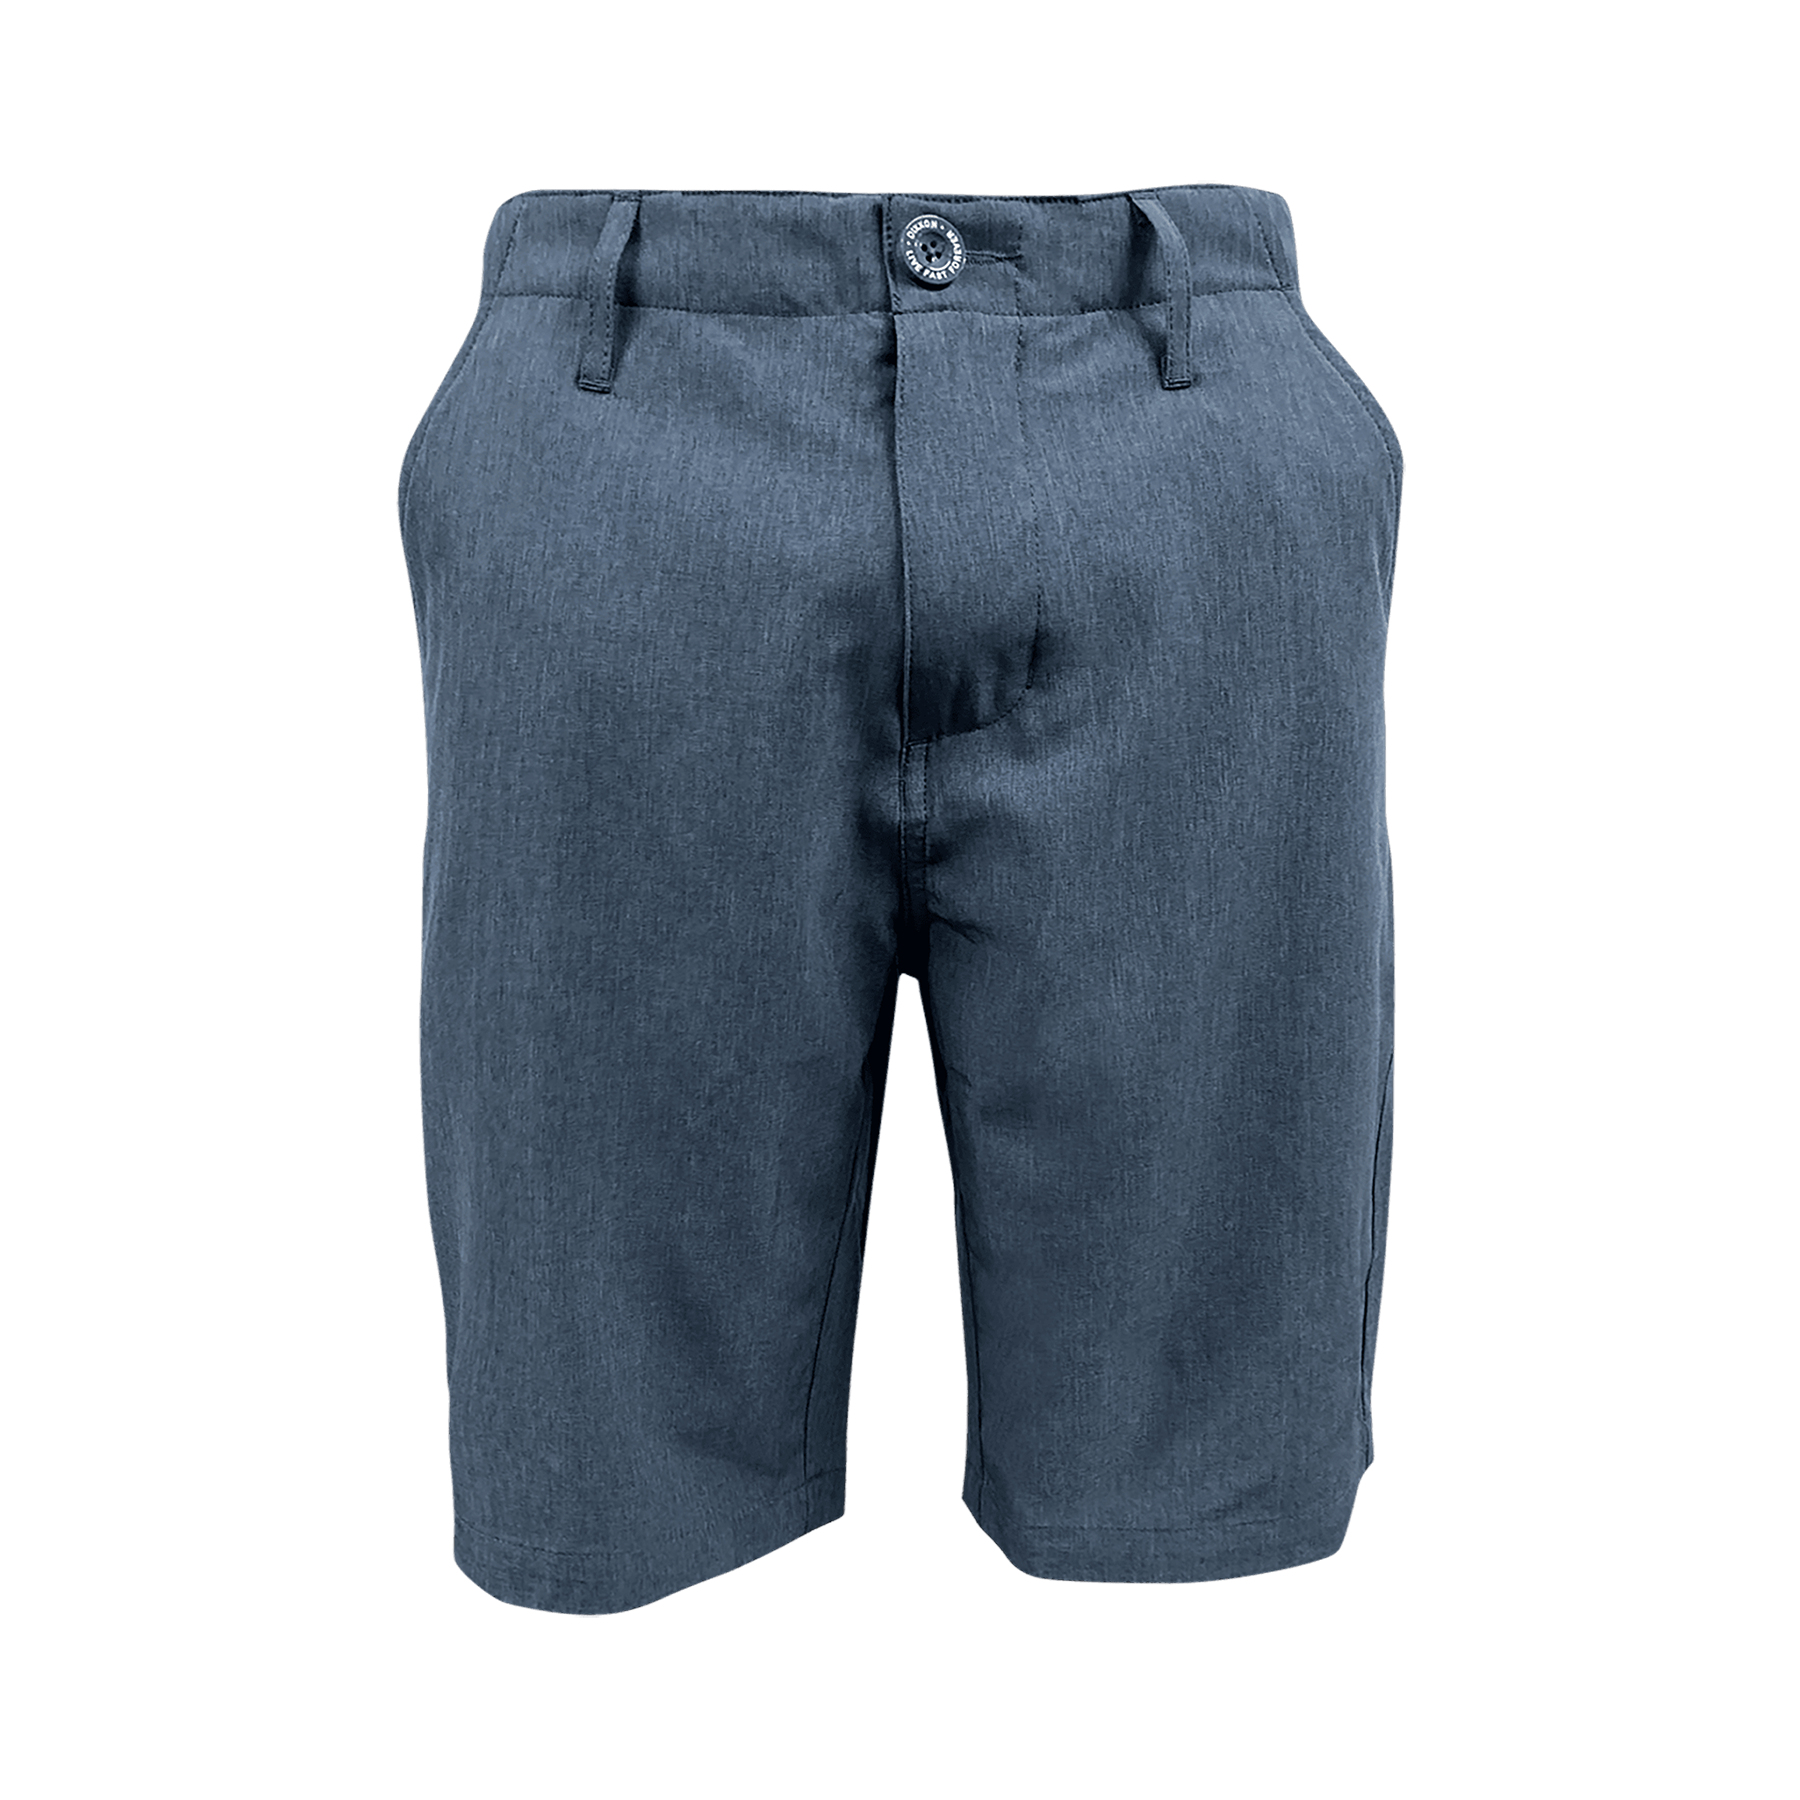 Dixxon Hybrid Shorts - Navy Blue | Dixxon Flannel Co.